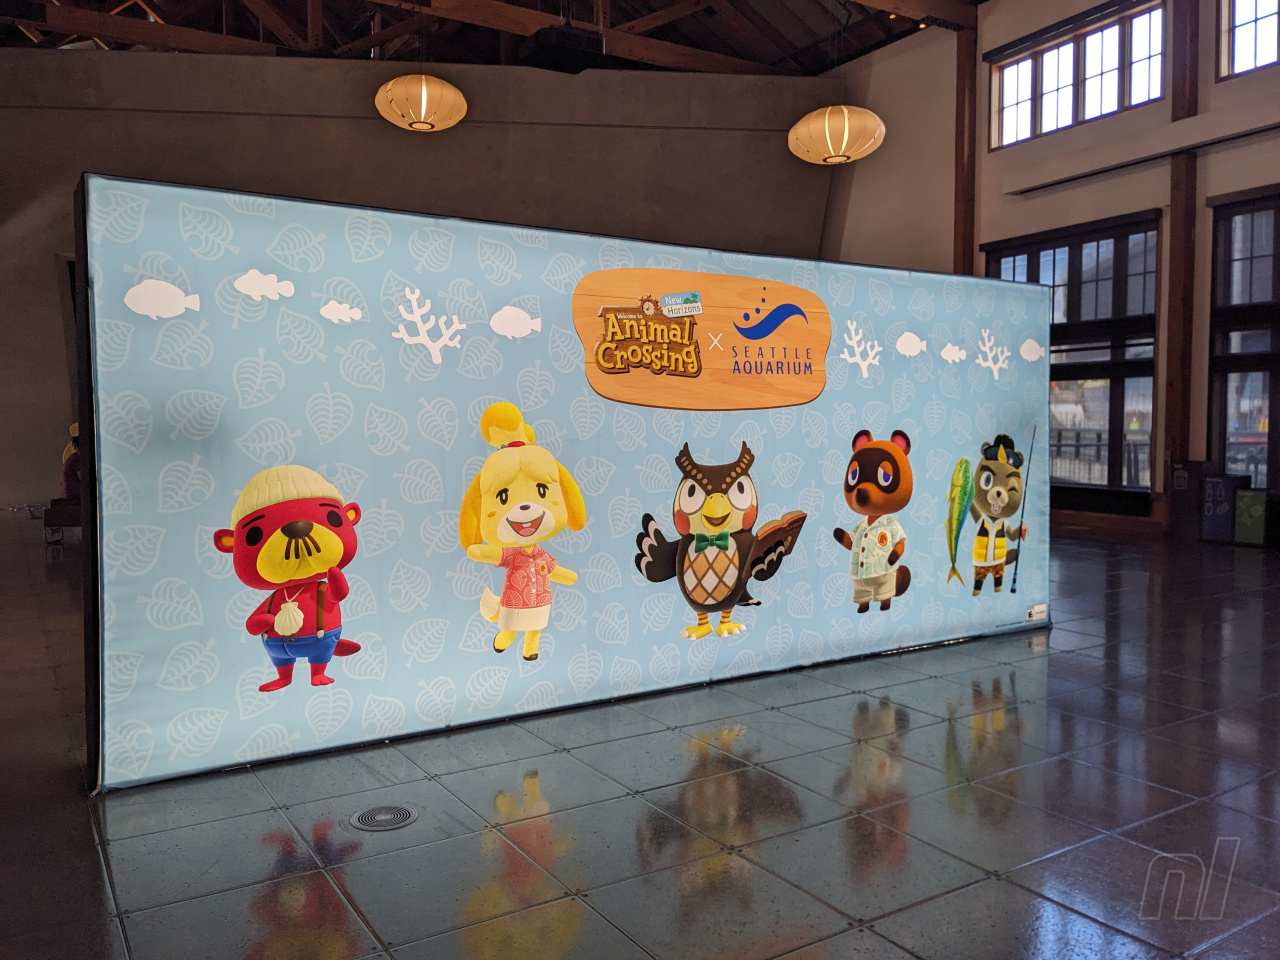 Animal Crossing: New Horizons X Seattle Aquarium Partnership - Seattle  Aquarium